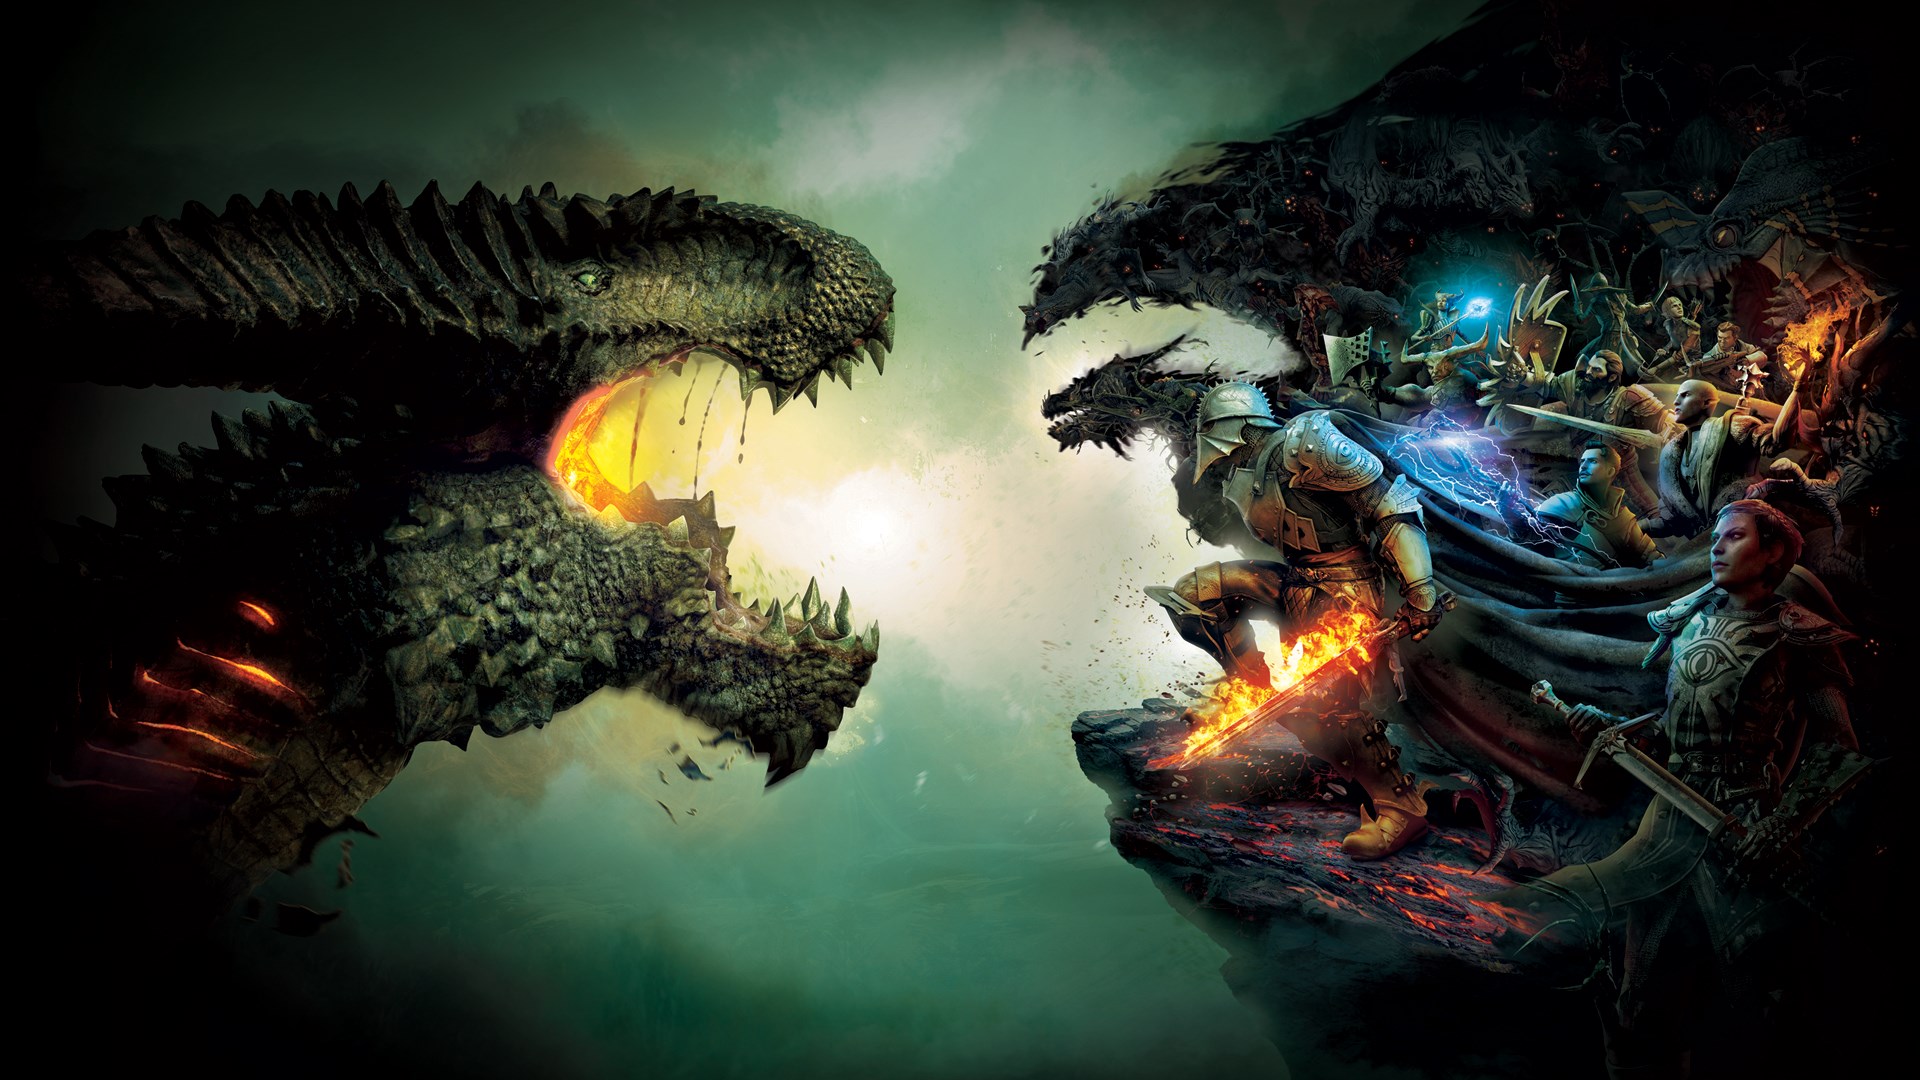 Buy Dragon Age™: Origins – PC – EA